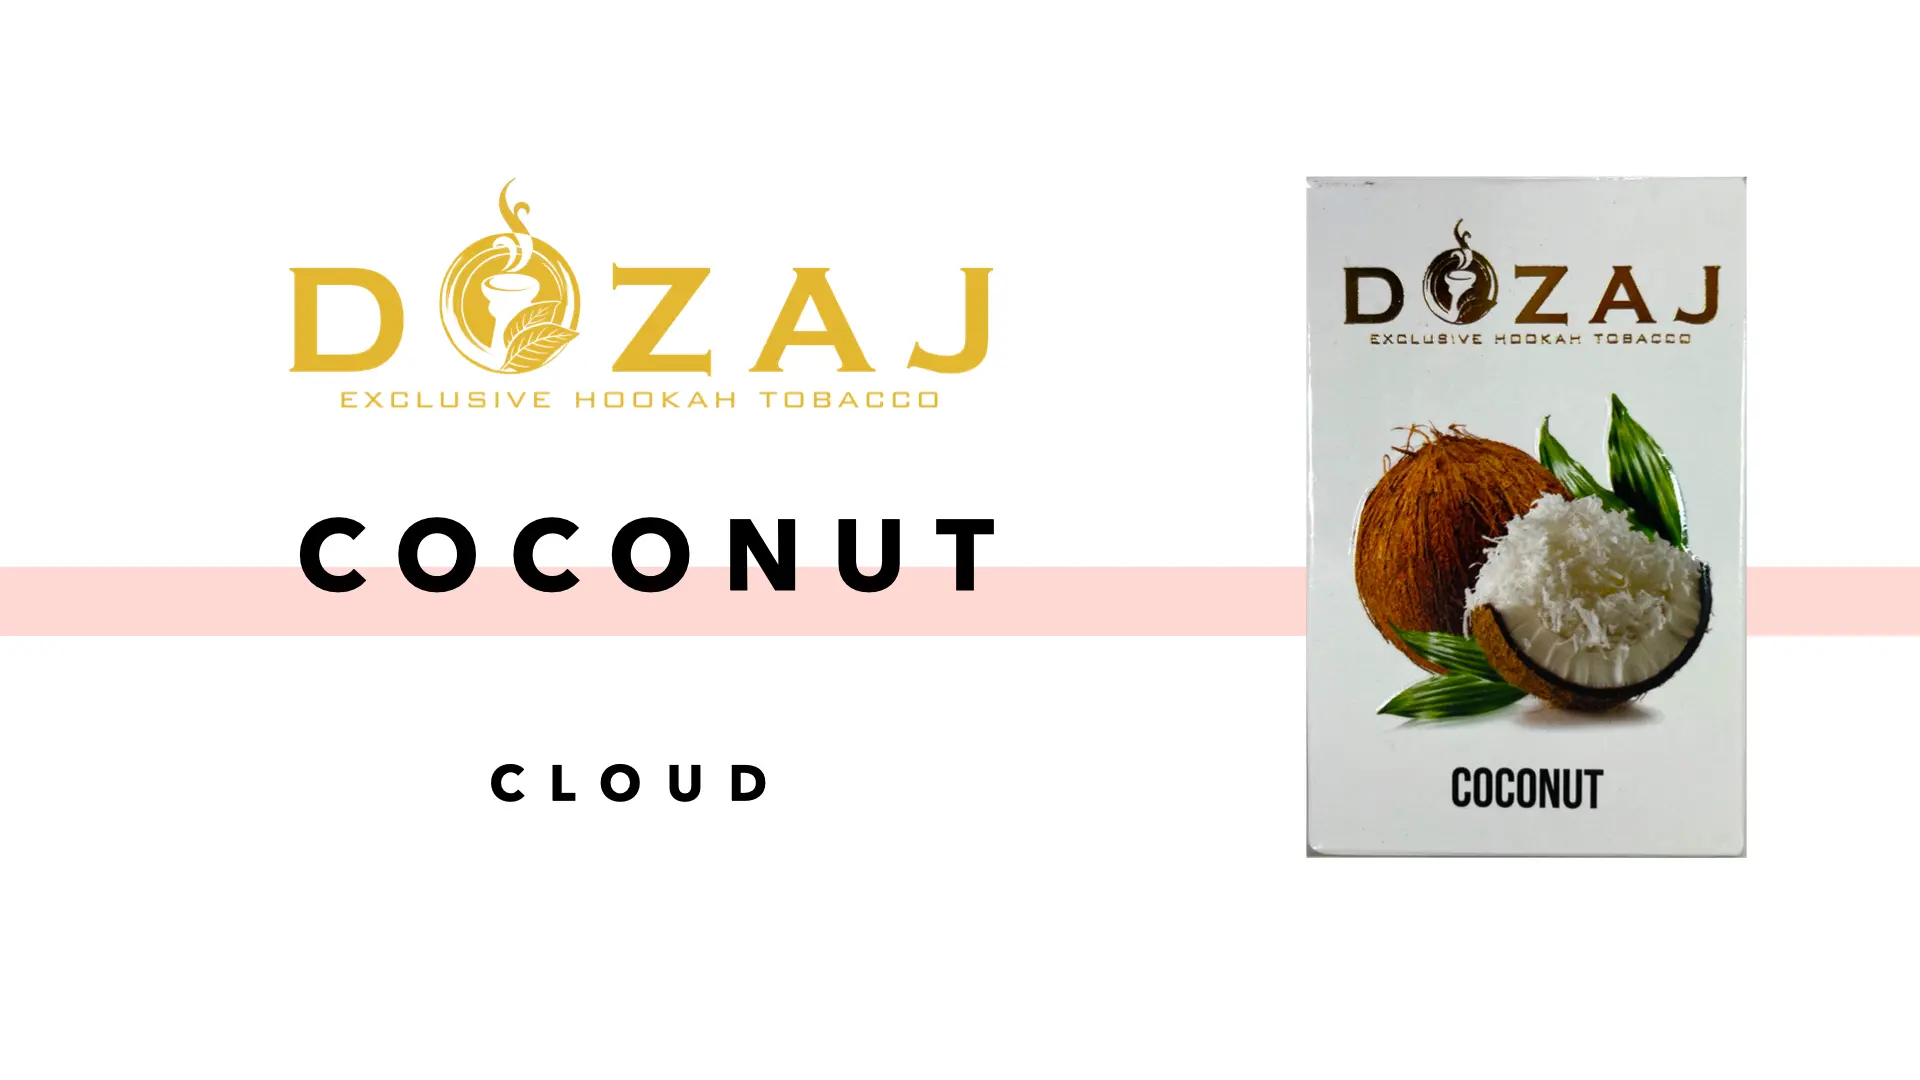 DOZAJ(ドザジ) coconut(ココナッツ) フレーバーレビュー